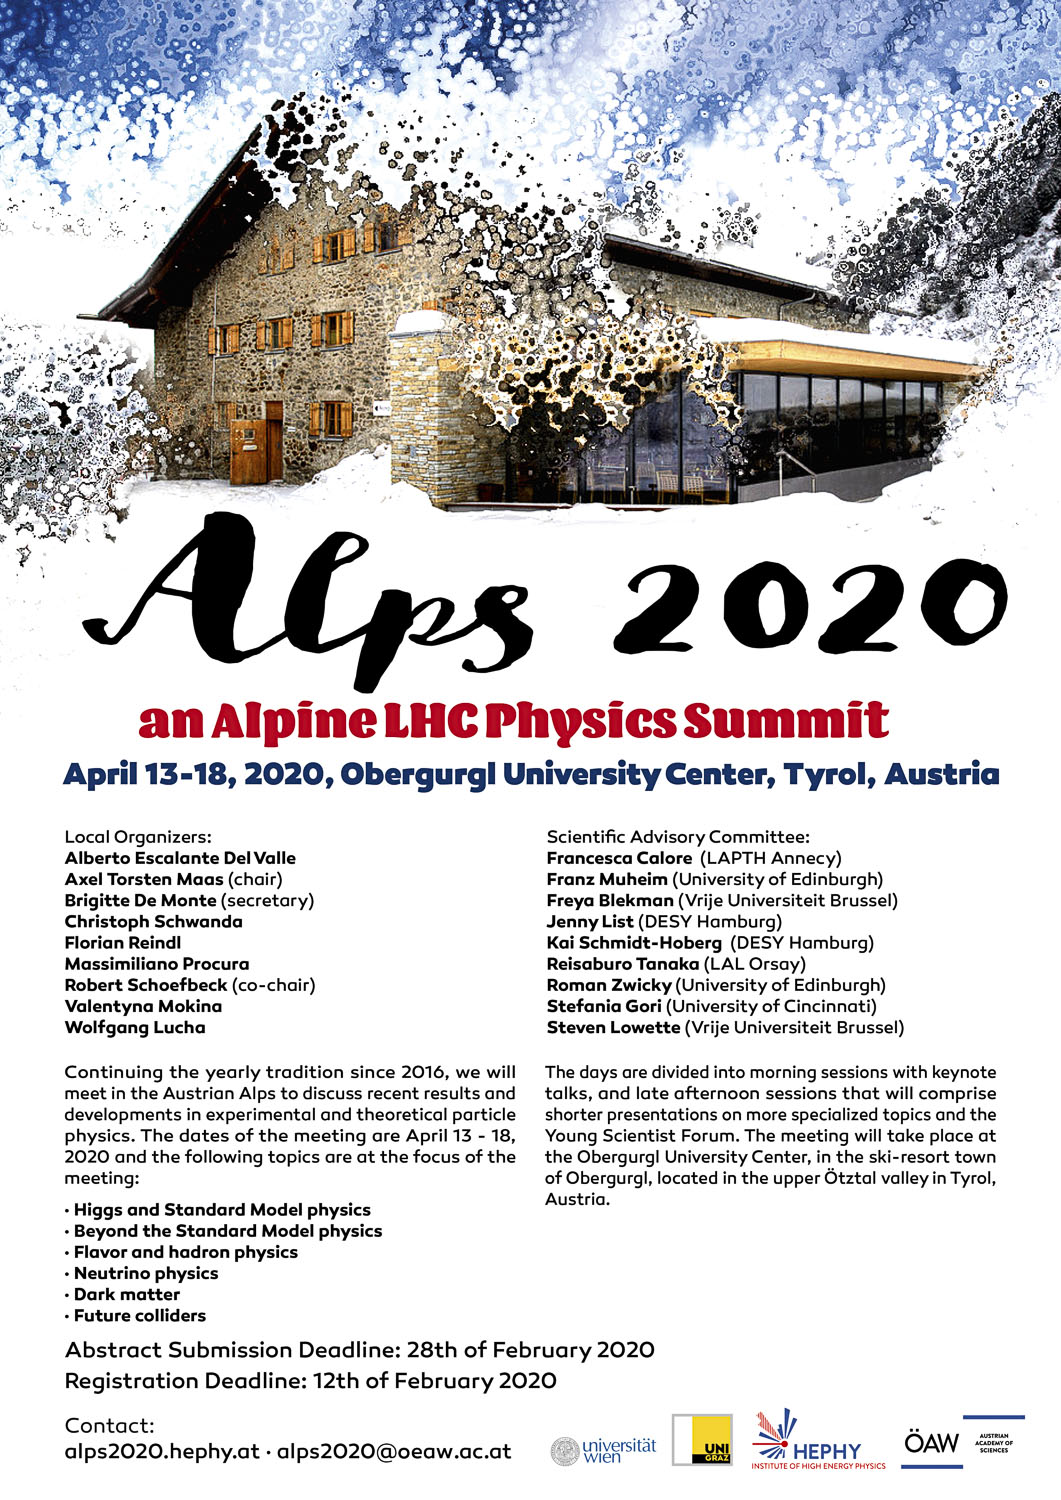 schultz+schultz Alps 2020